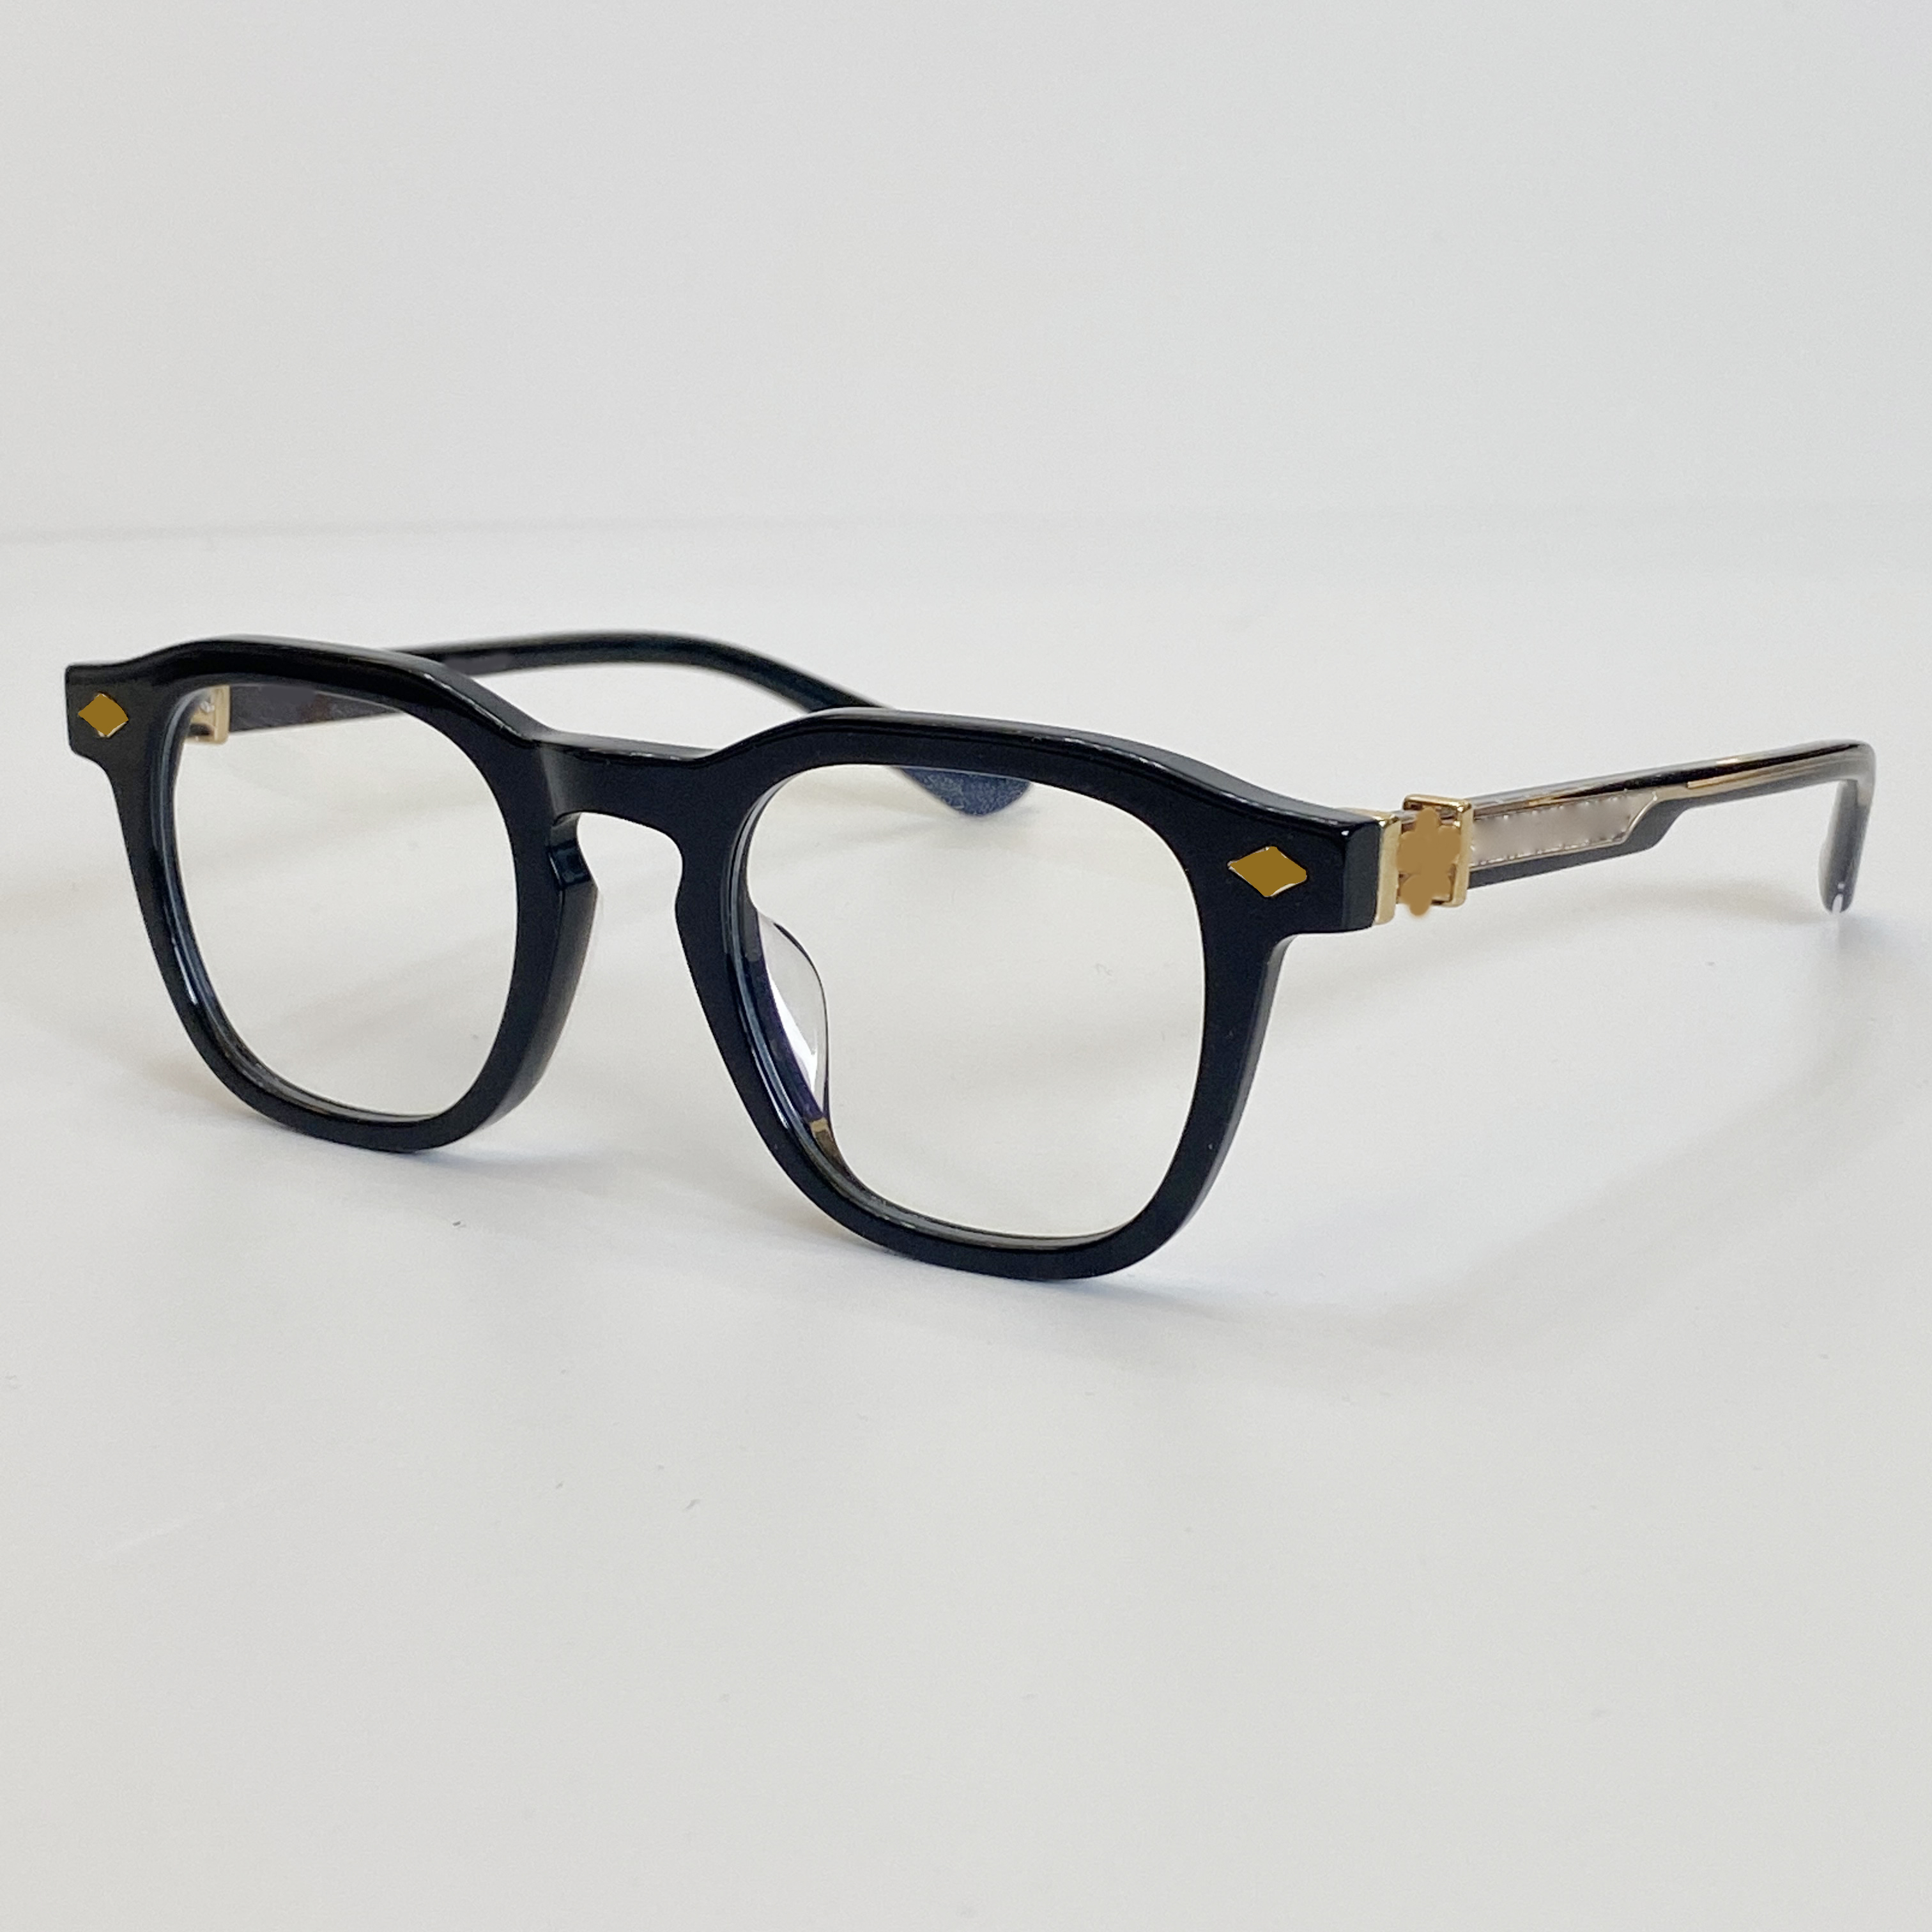 luxury designer chr optical sunglasses frames for men mens woman sun glasses for women heavy process clear green frame radiati283V